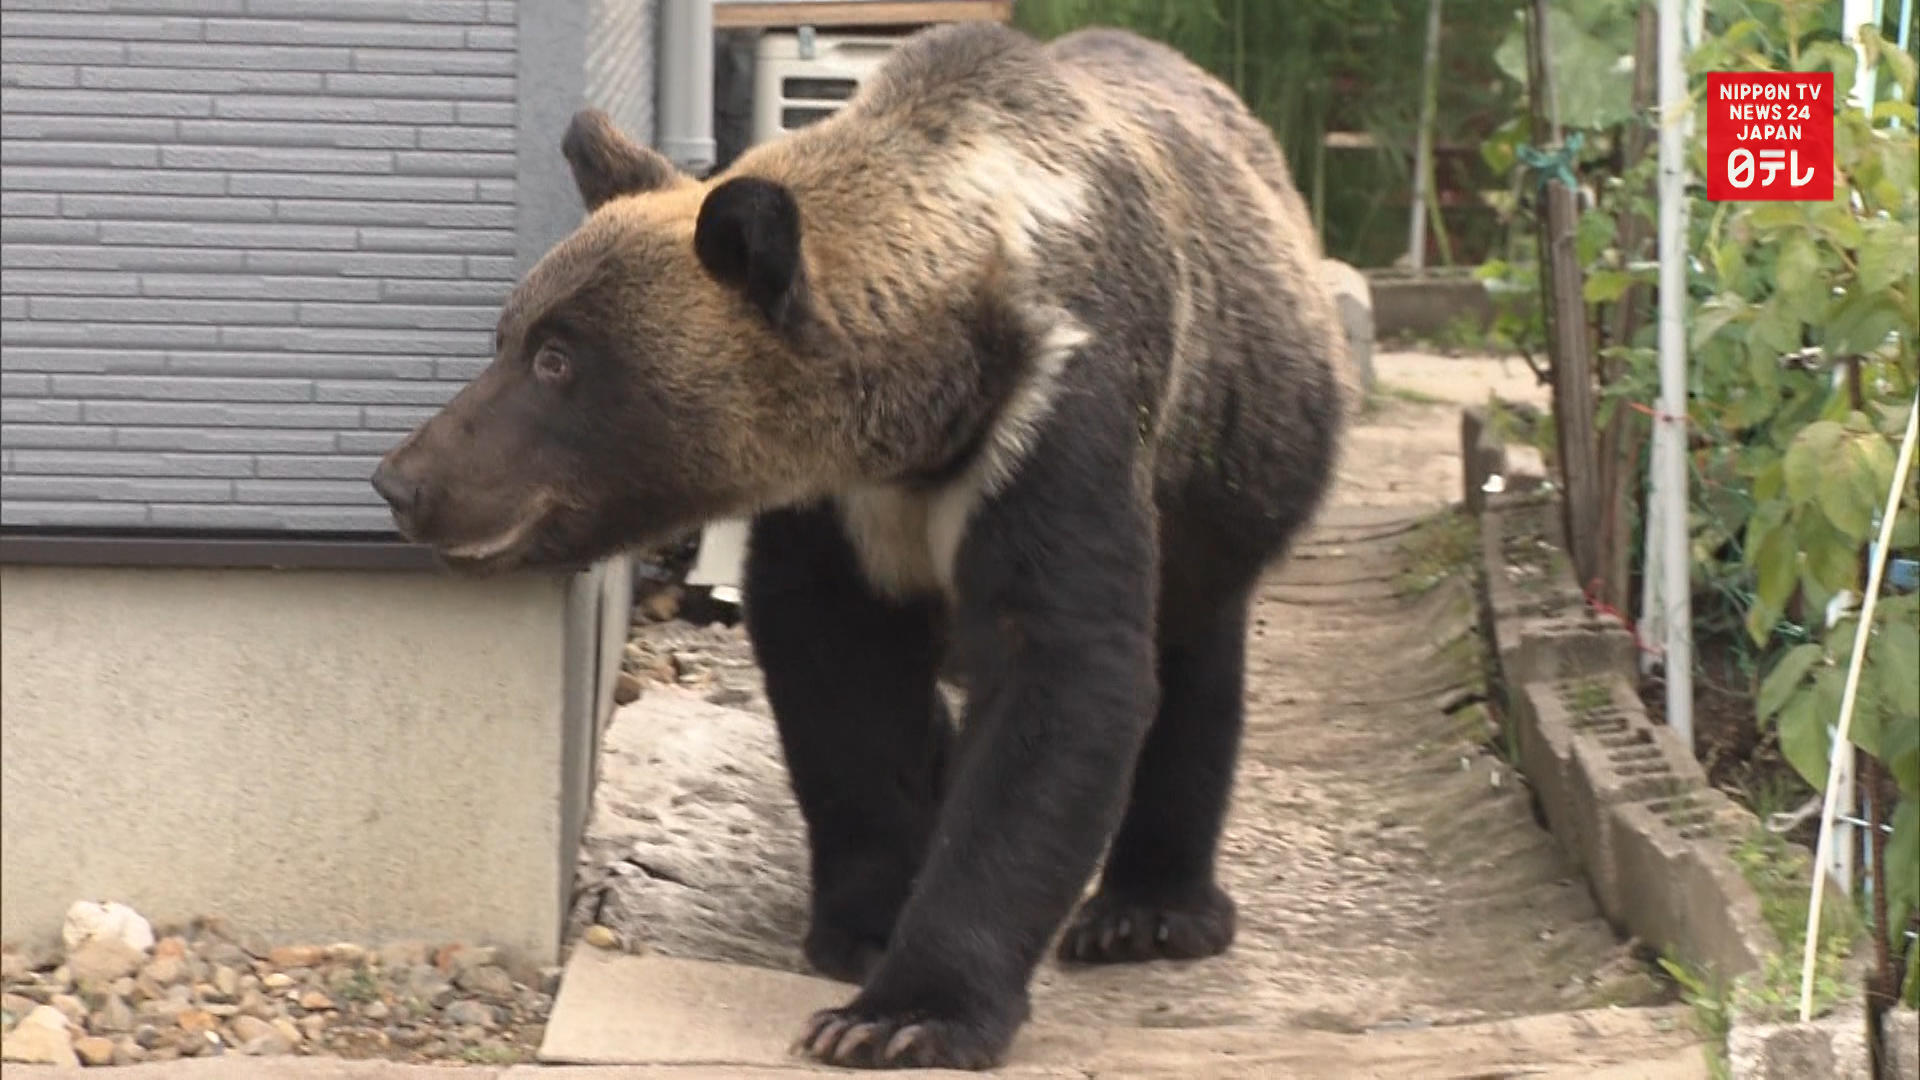 Hunters kill bear near residential area of Sapporo